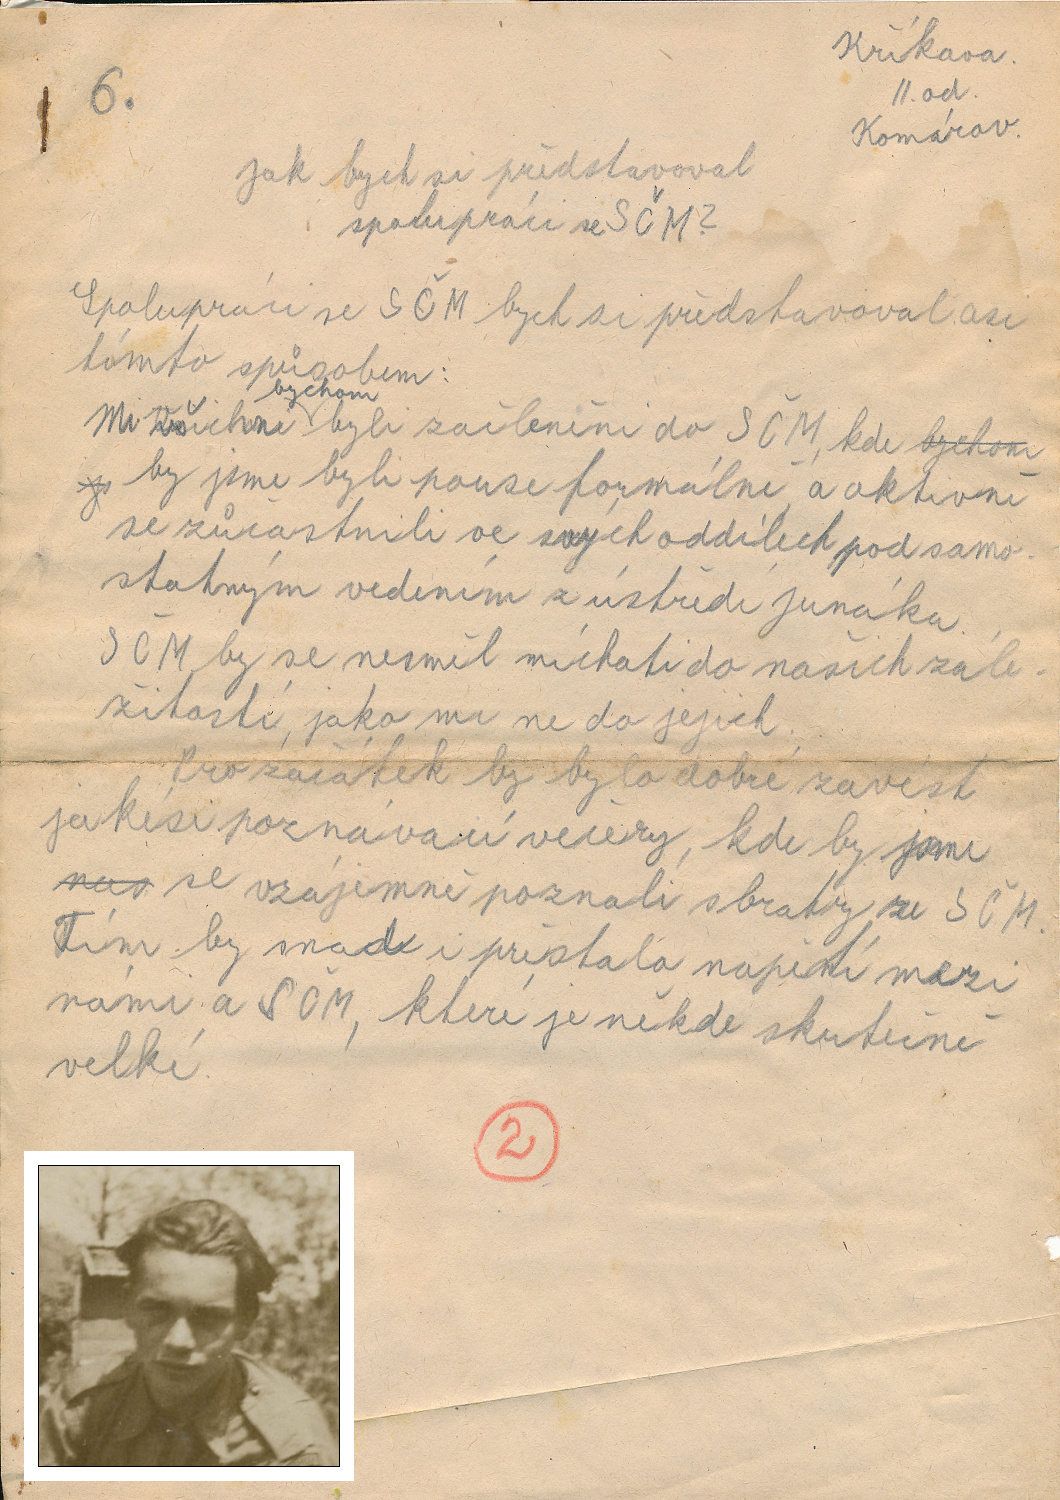 Anketa o spolupráci s SČM - 1948 (Sáša Křikava)